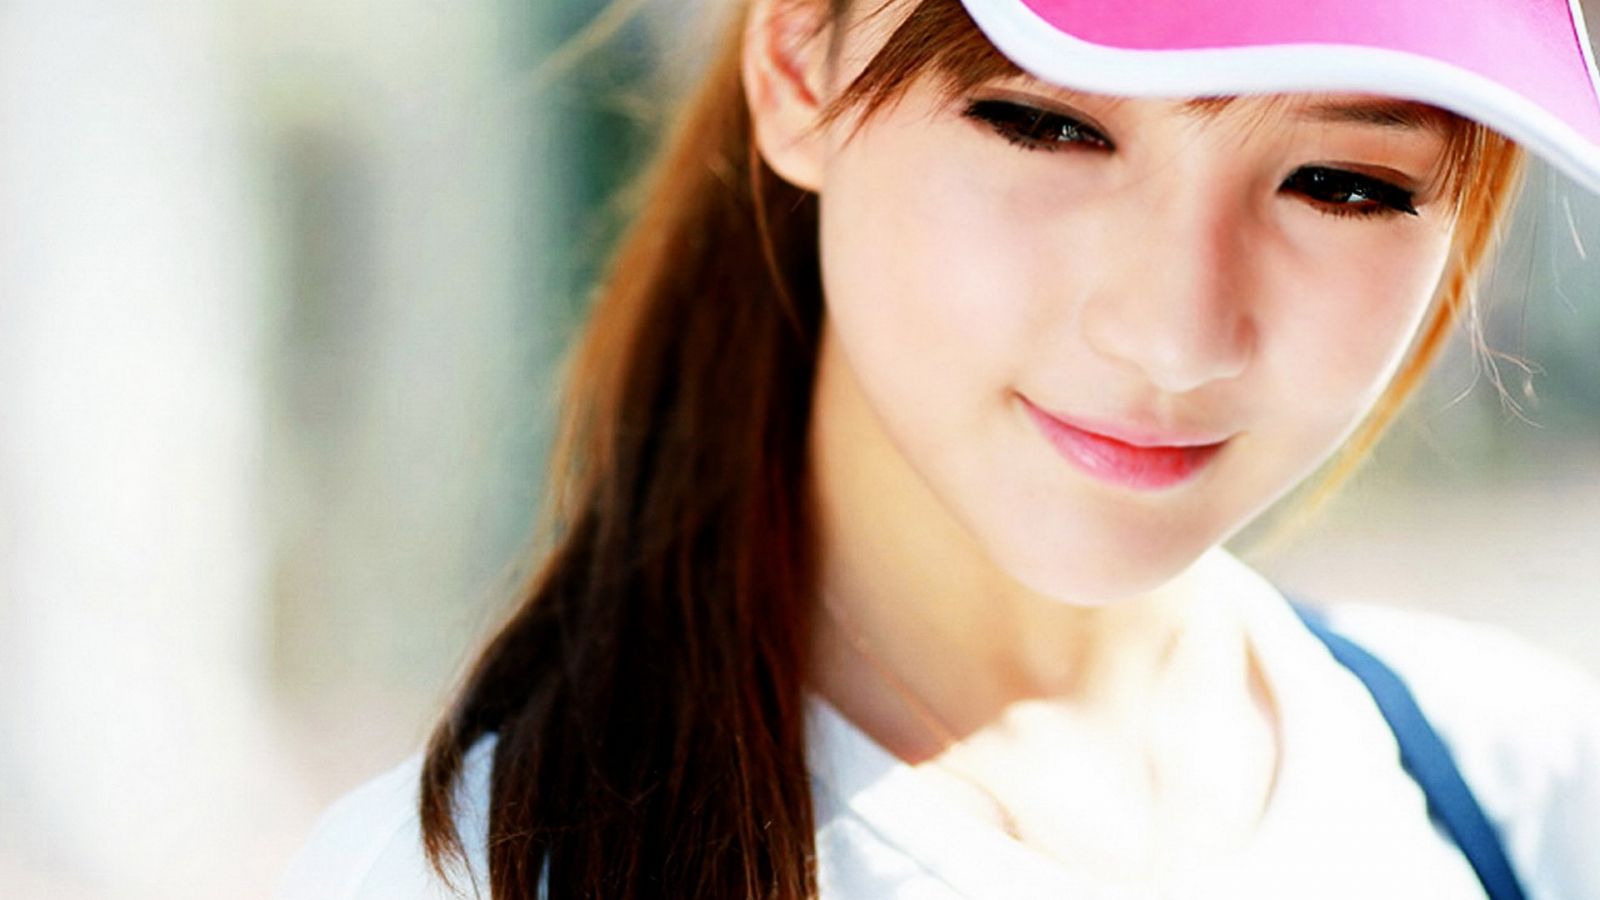 Free download Description Cute Asian Girl Wallpaper HD is a hi res